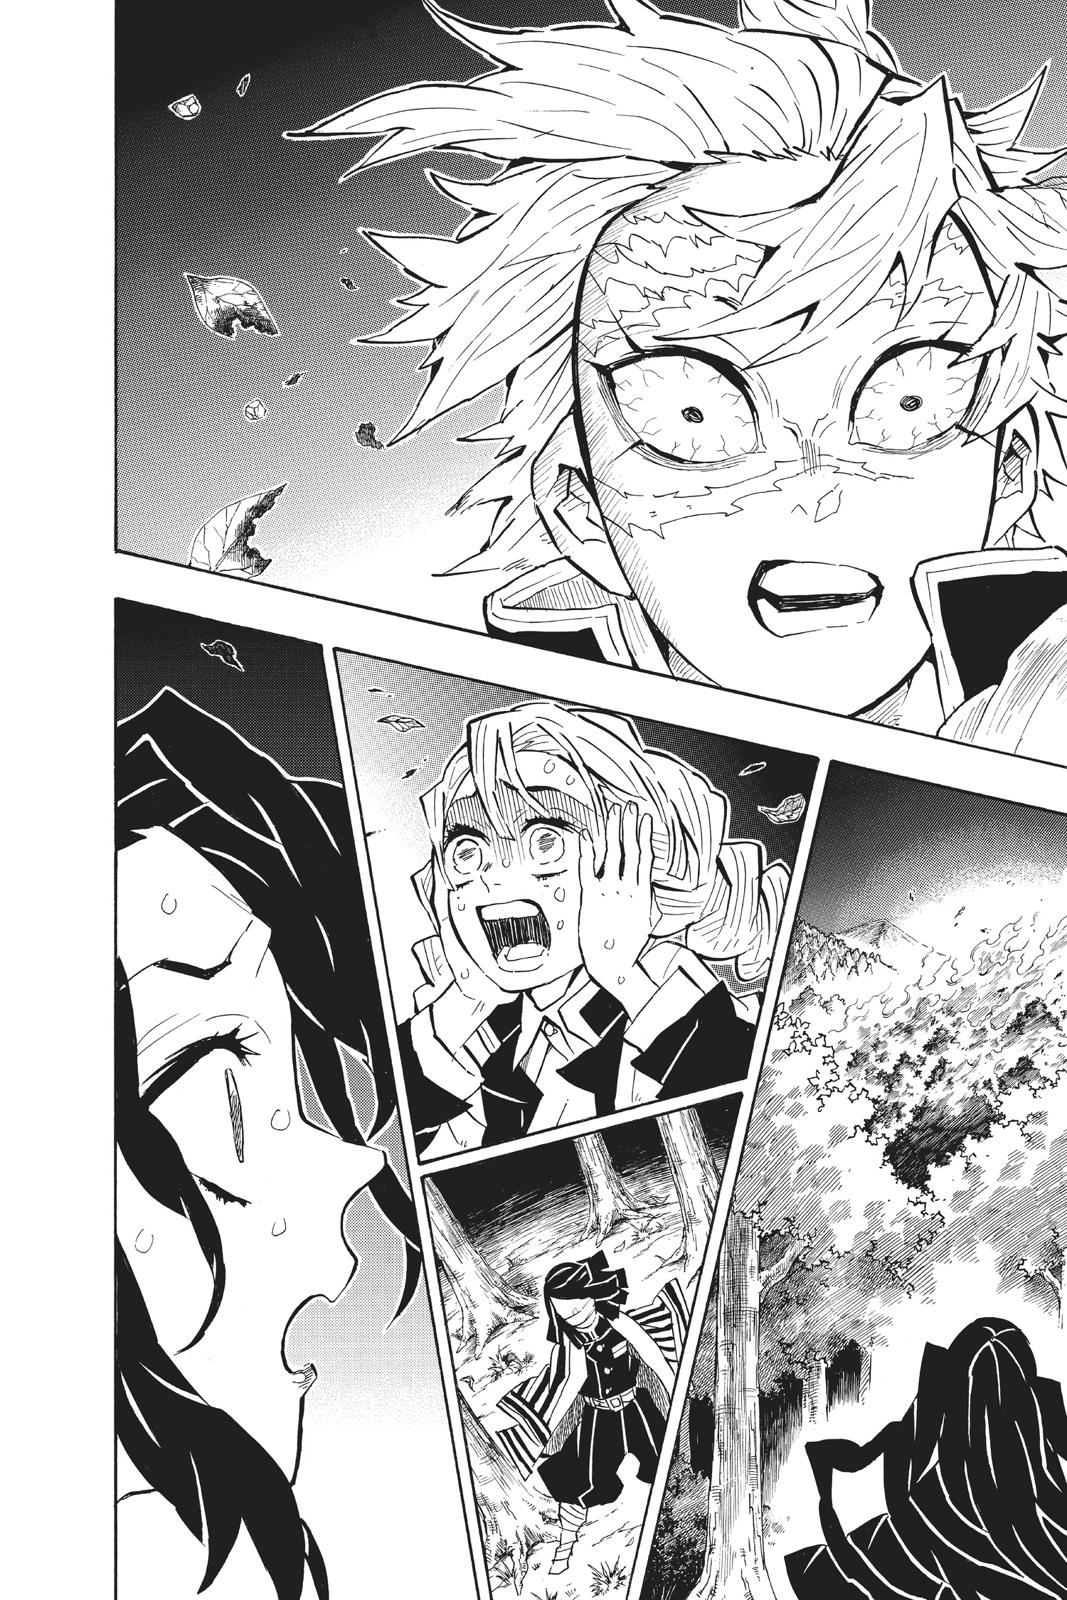 Demon Slayer Manga Manga Chapter - 138 - image 1